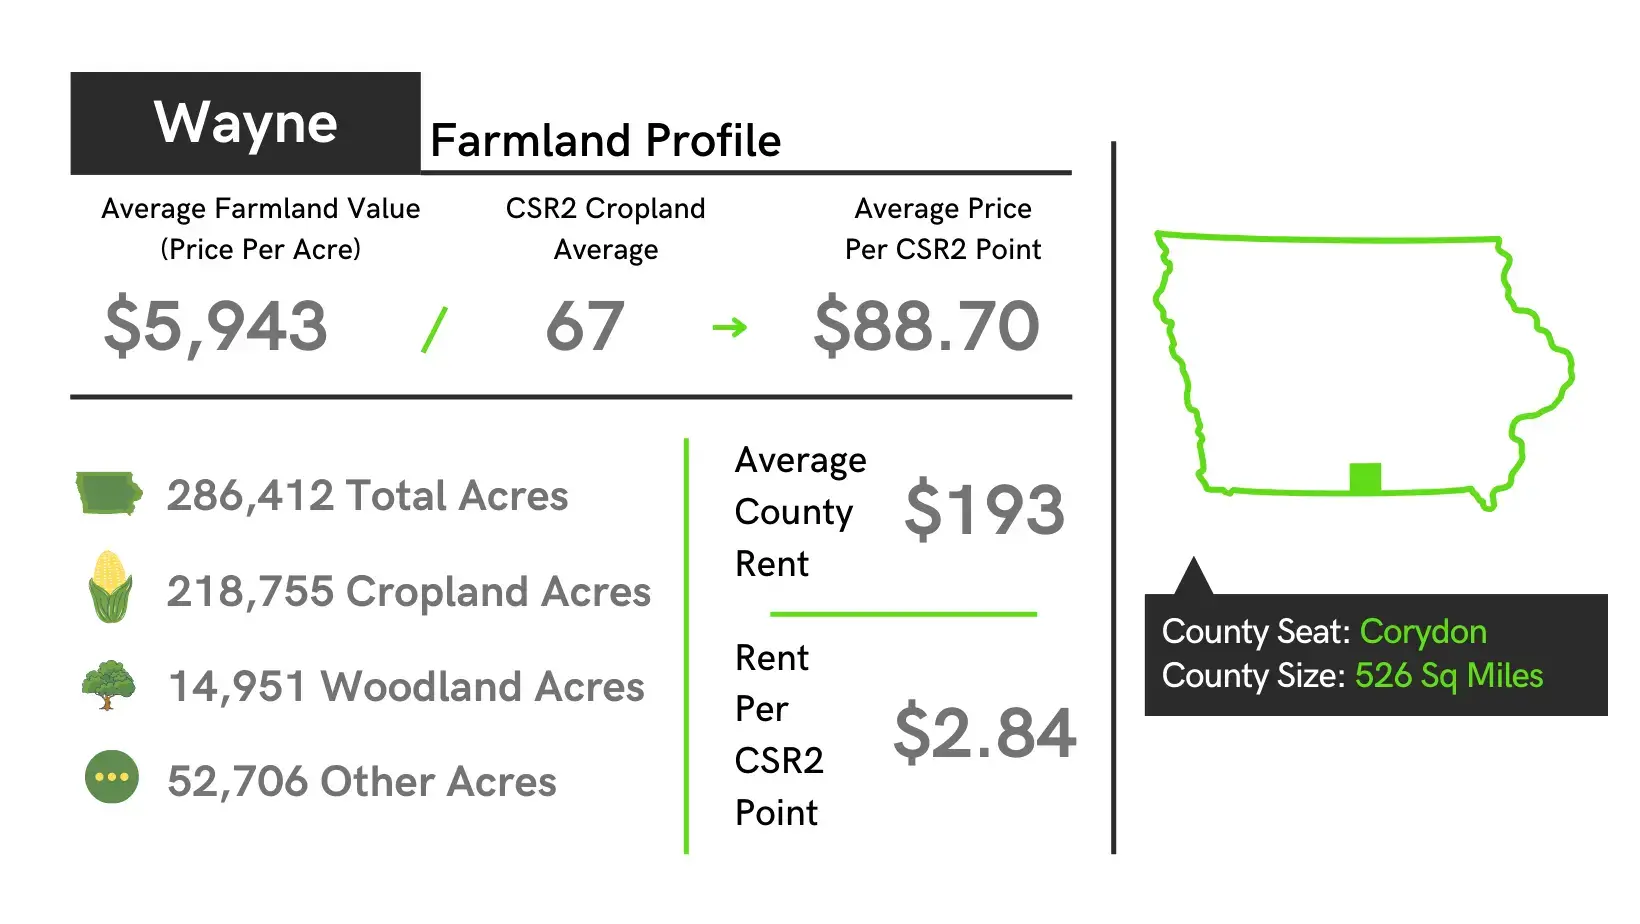 Wayne County Farmland Profile